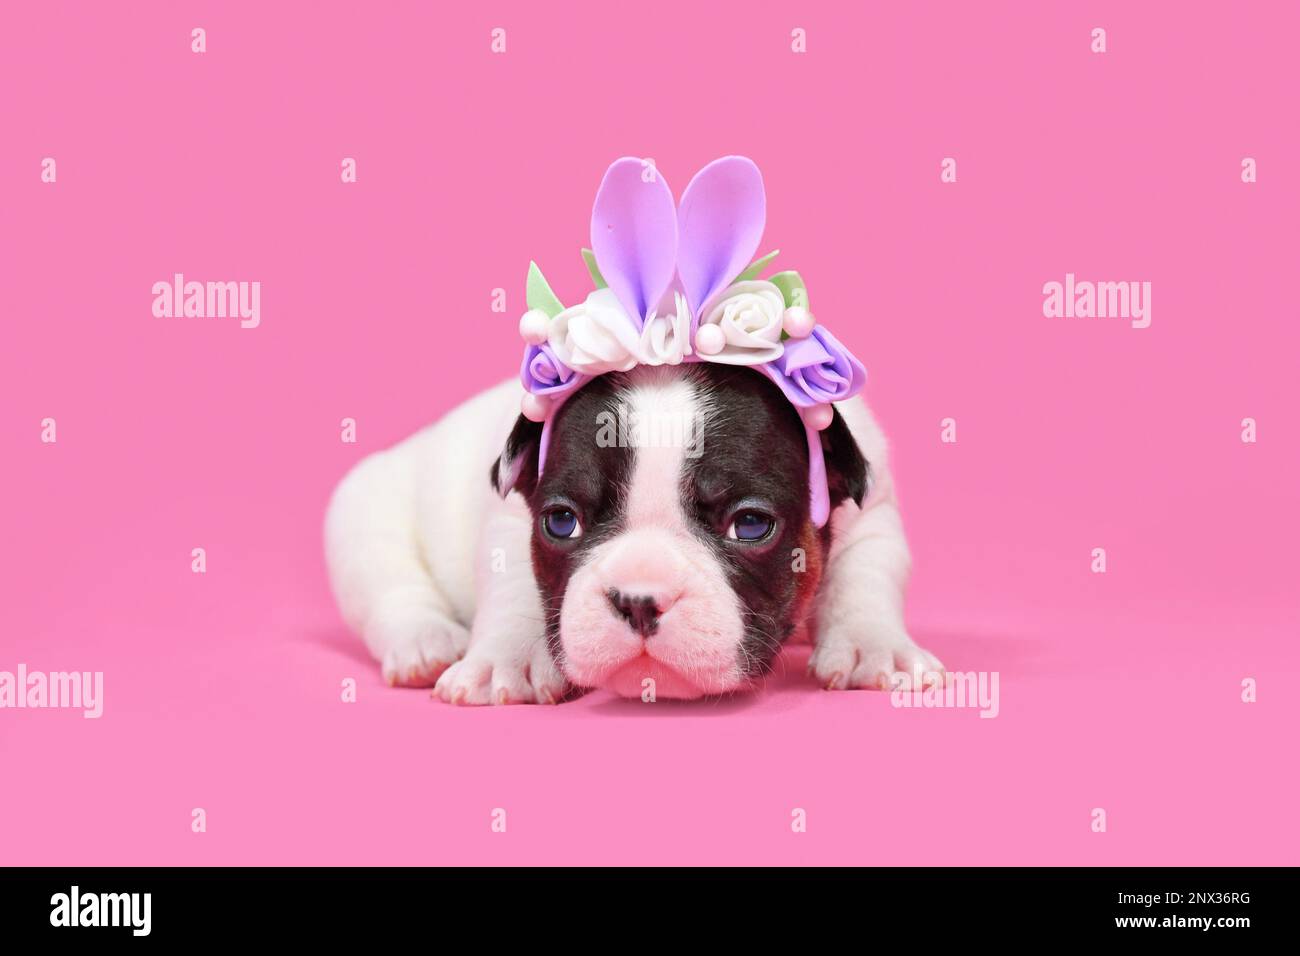 Chien Bulldog français à pied chiot habillé comme un lapin de Pâques avec des oreilles de lapin serre-tête avec des fleurs sur fond rose Banque D'Images